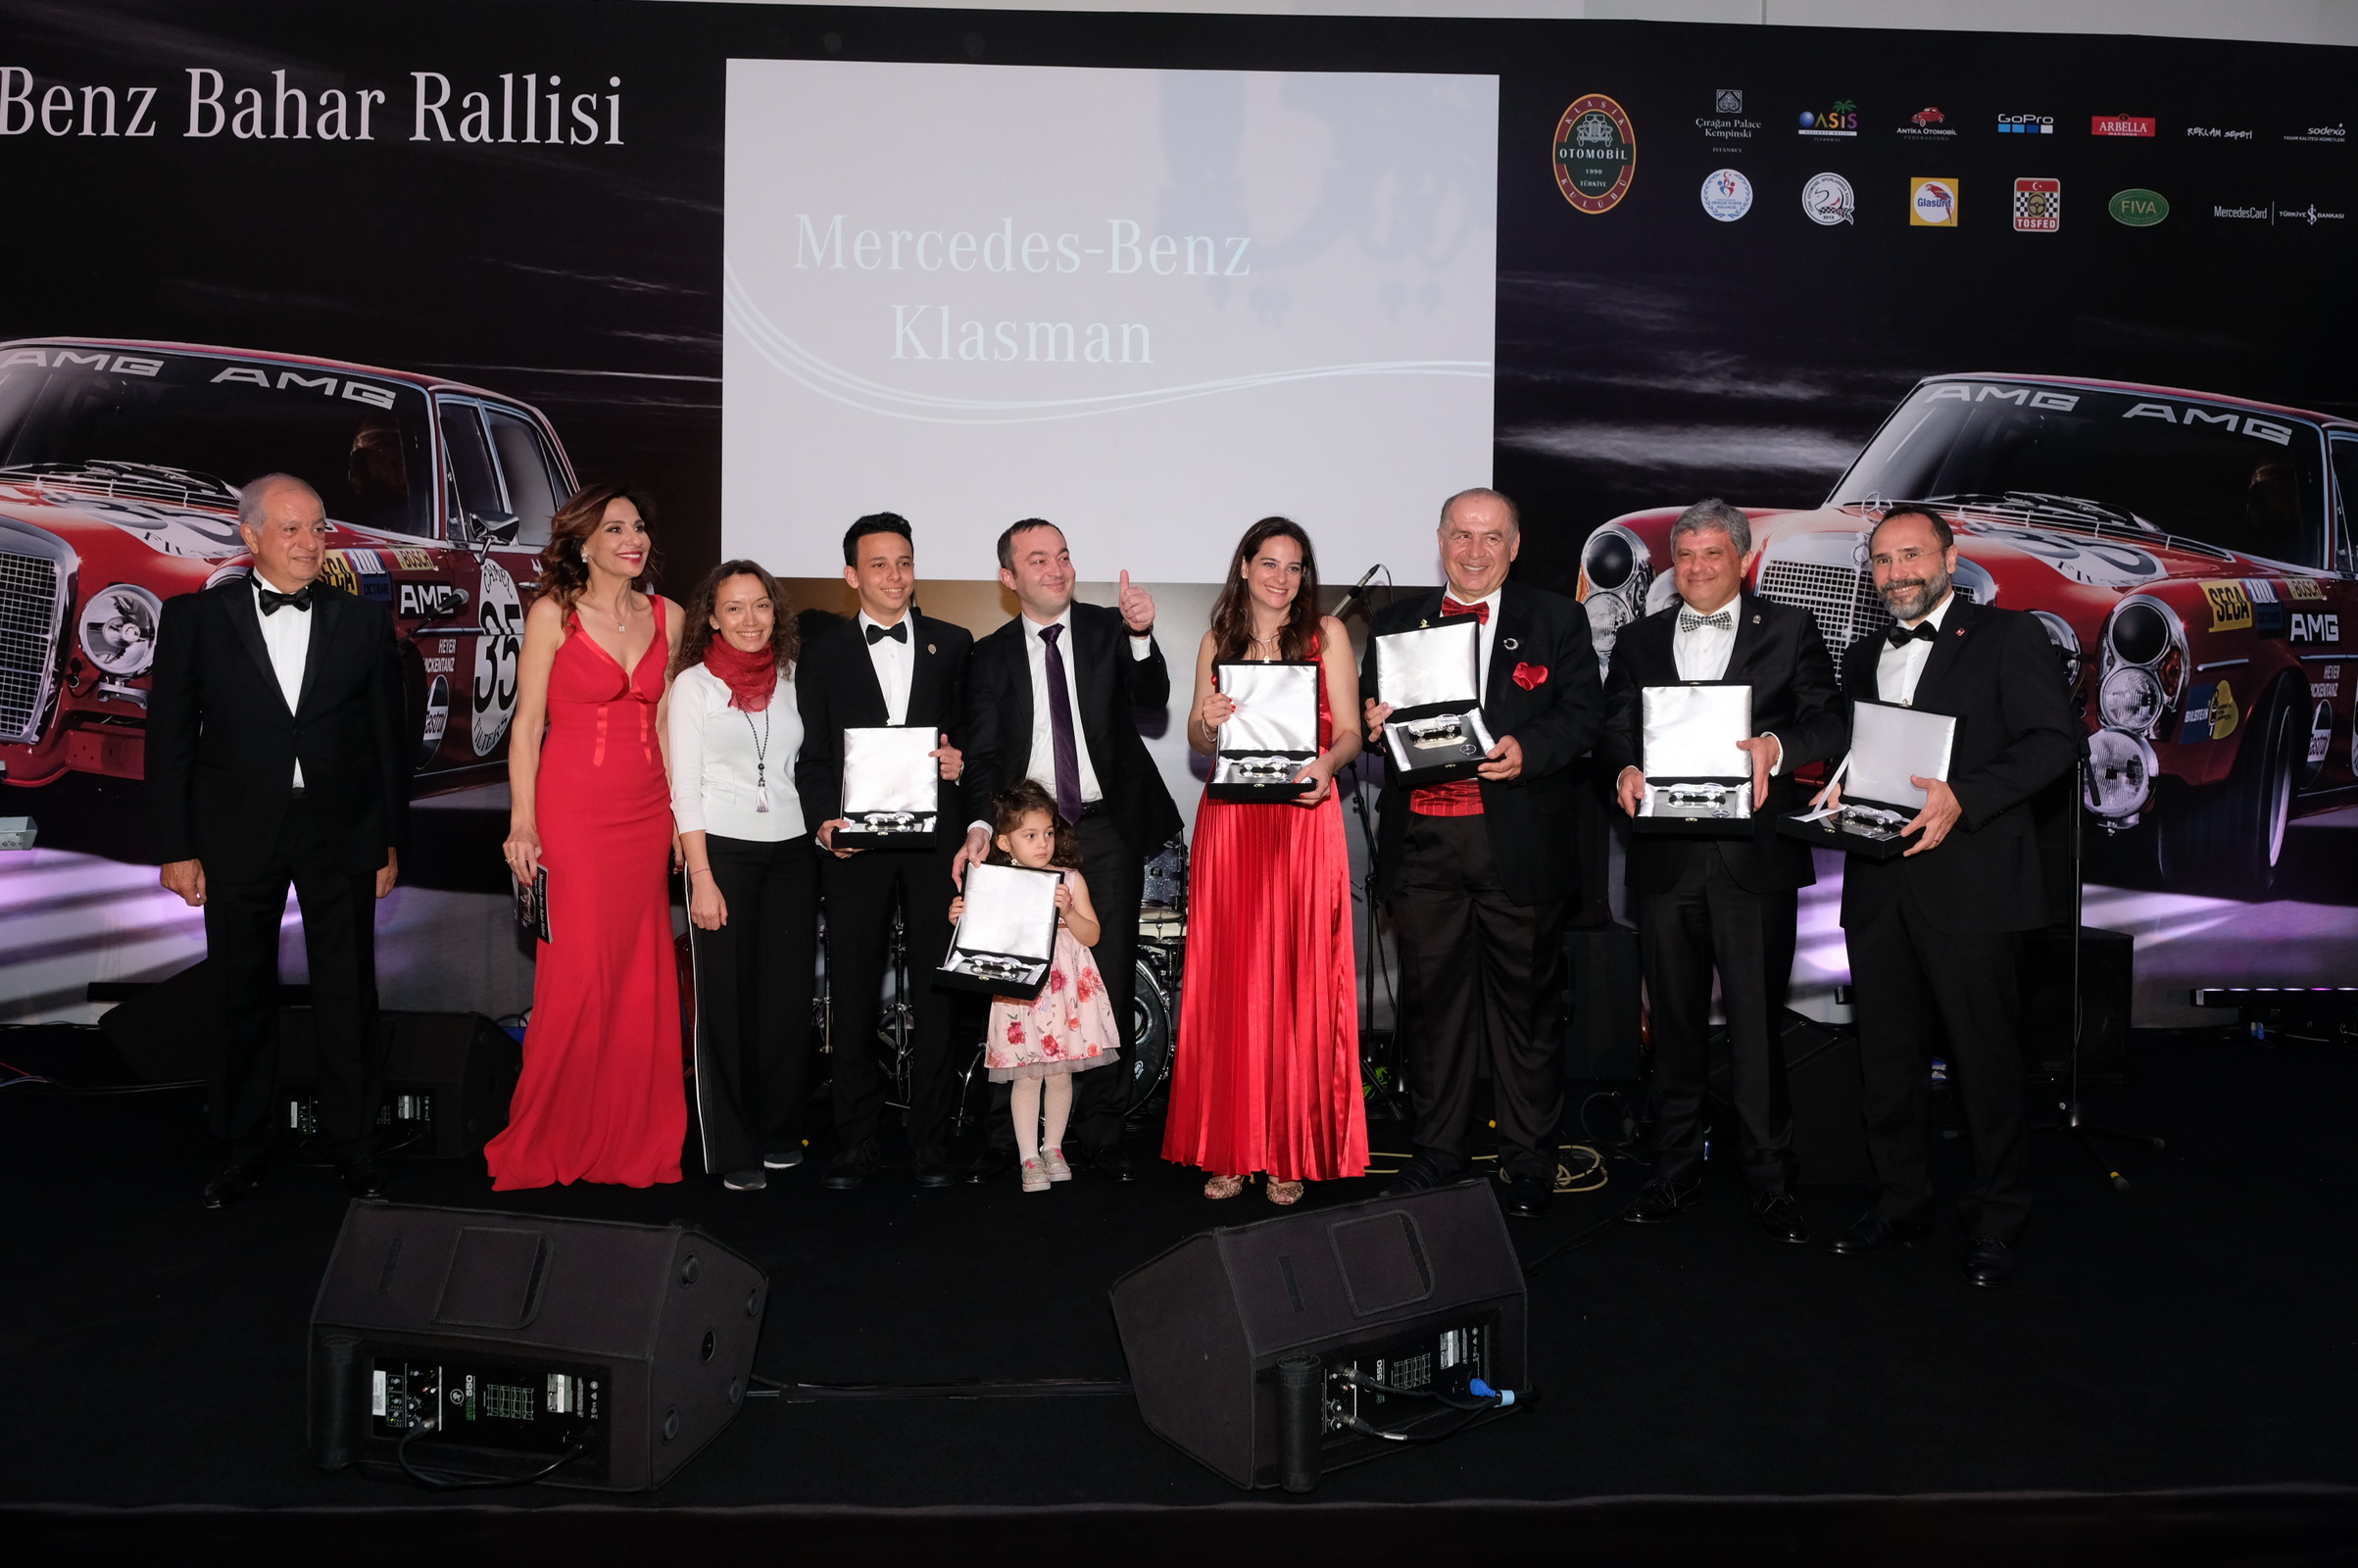 Mercedes-Benz Bahar Rallisi 2018 Ödül Töreni